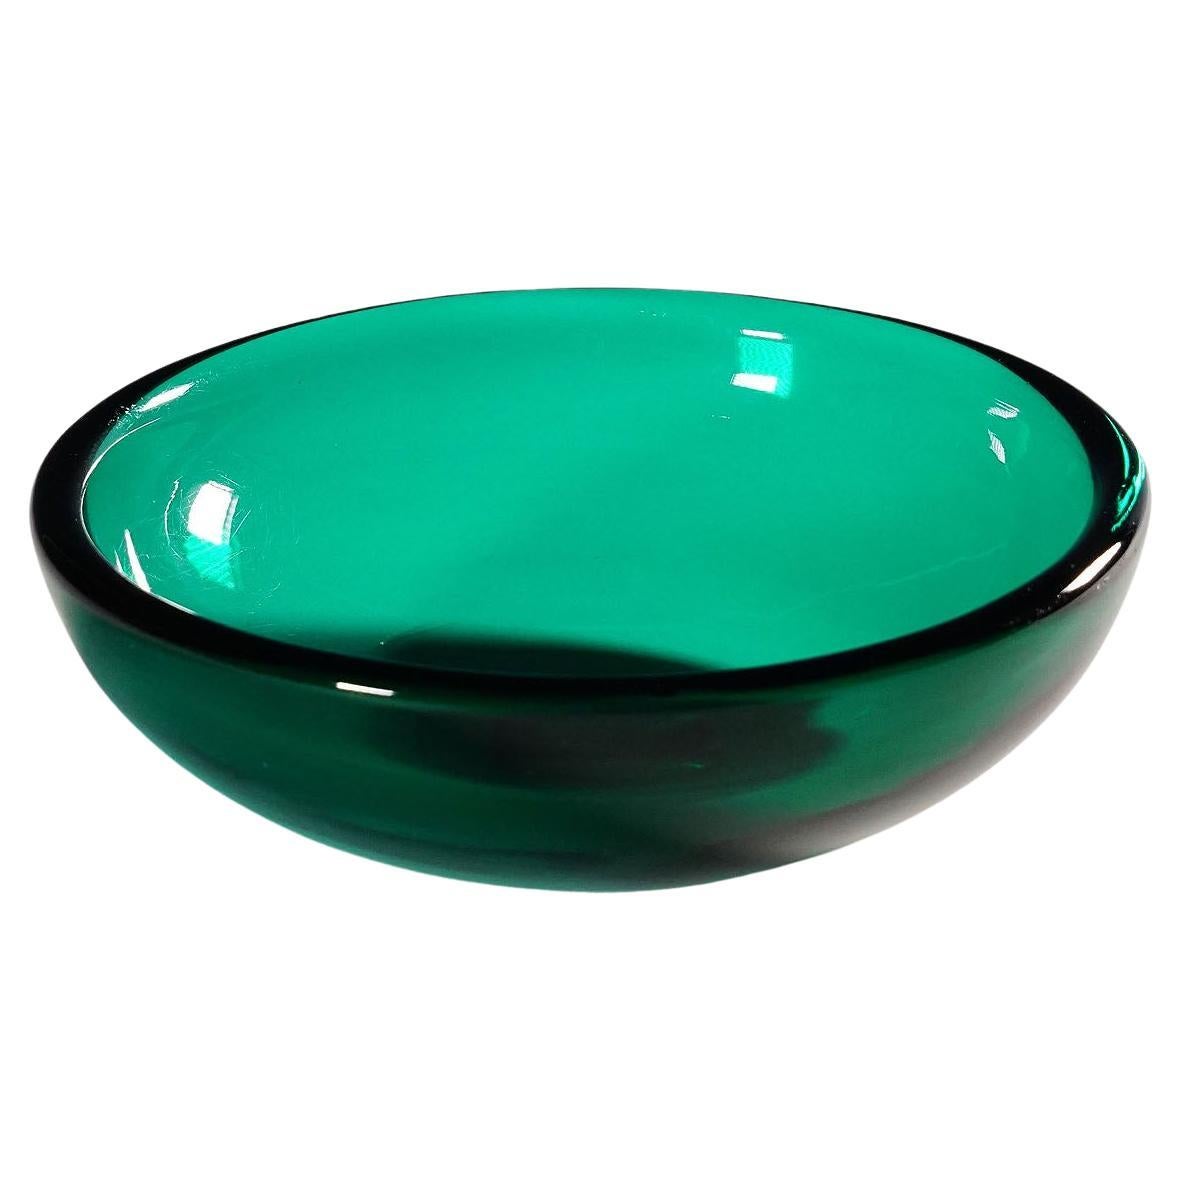 Small Dish in Green Glass, Venini Murano, Ca. 1930s